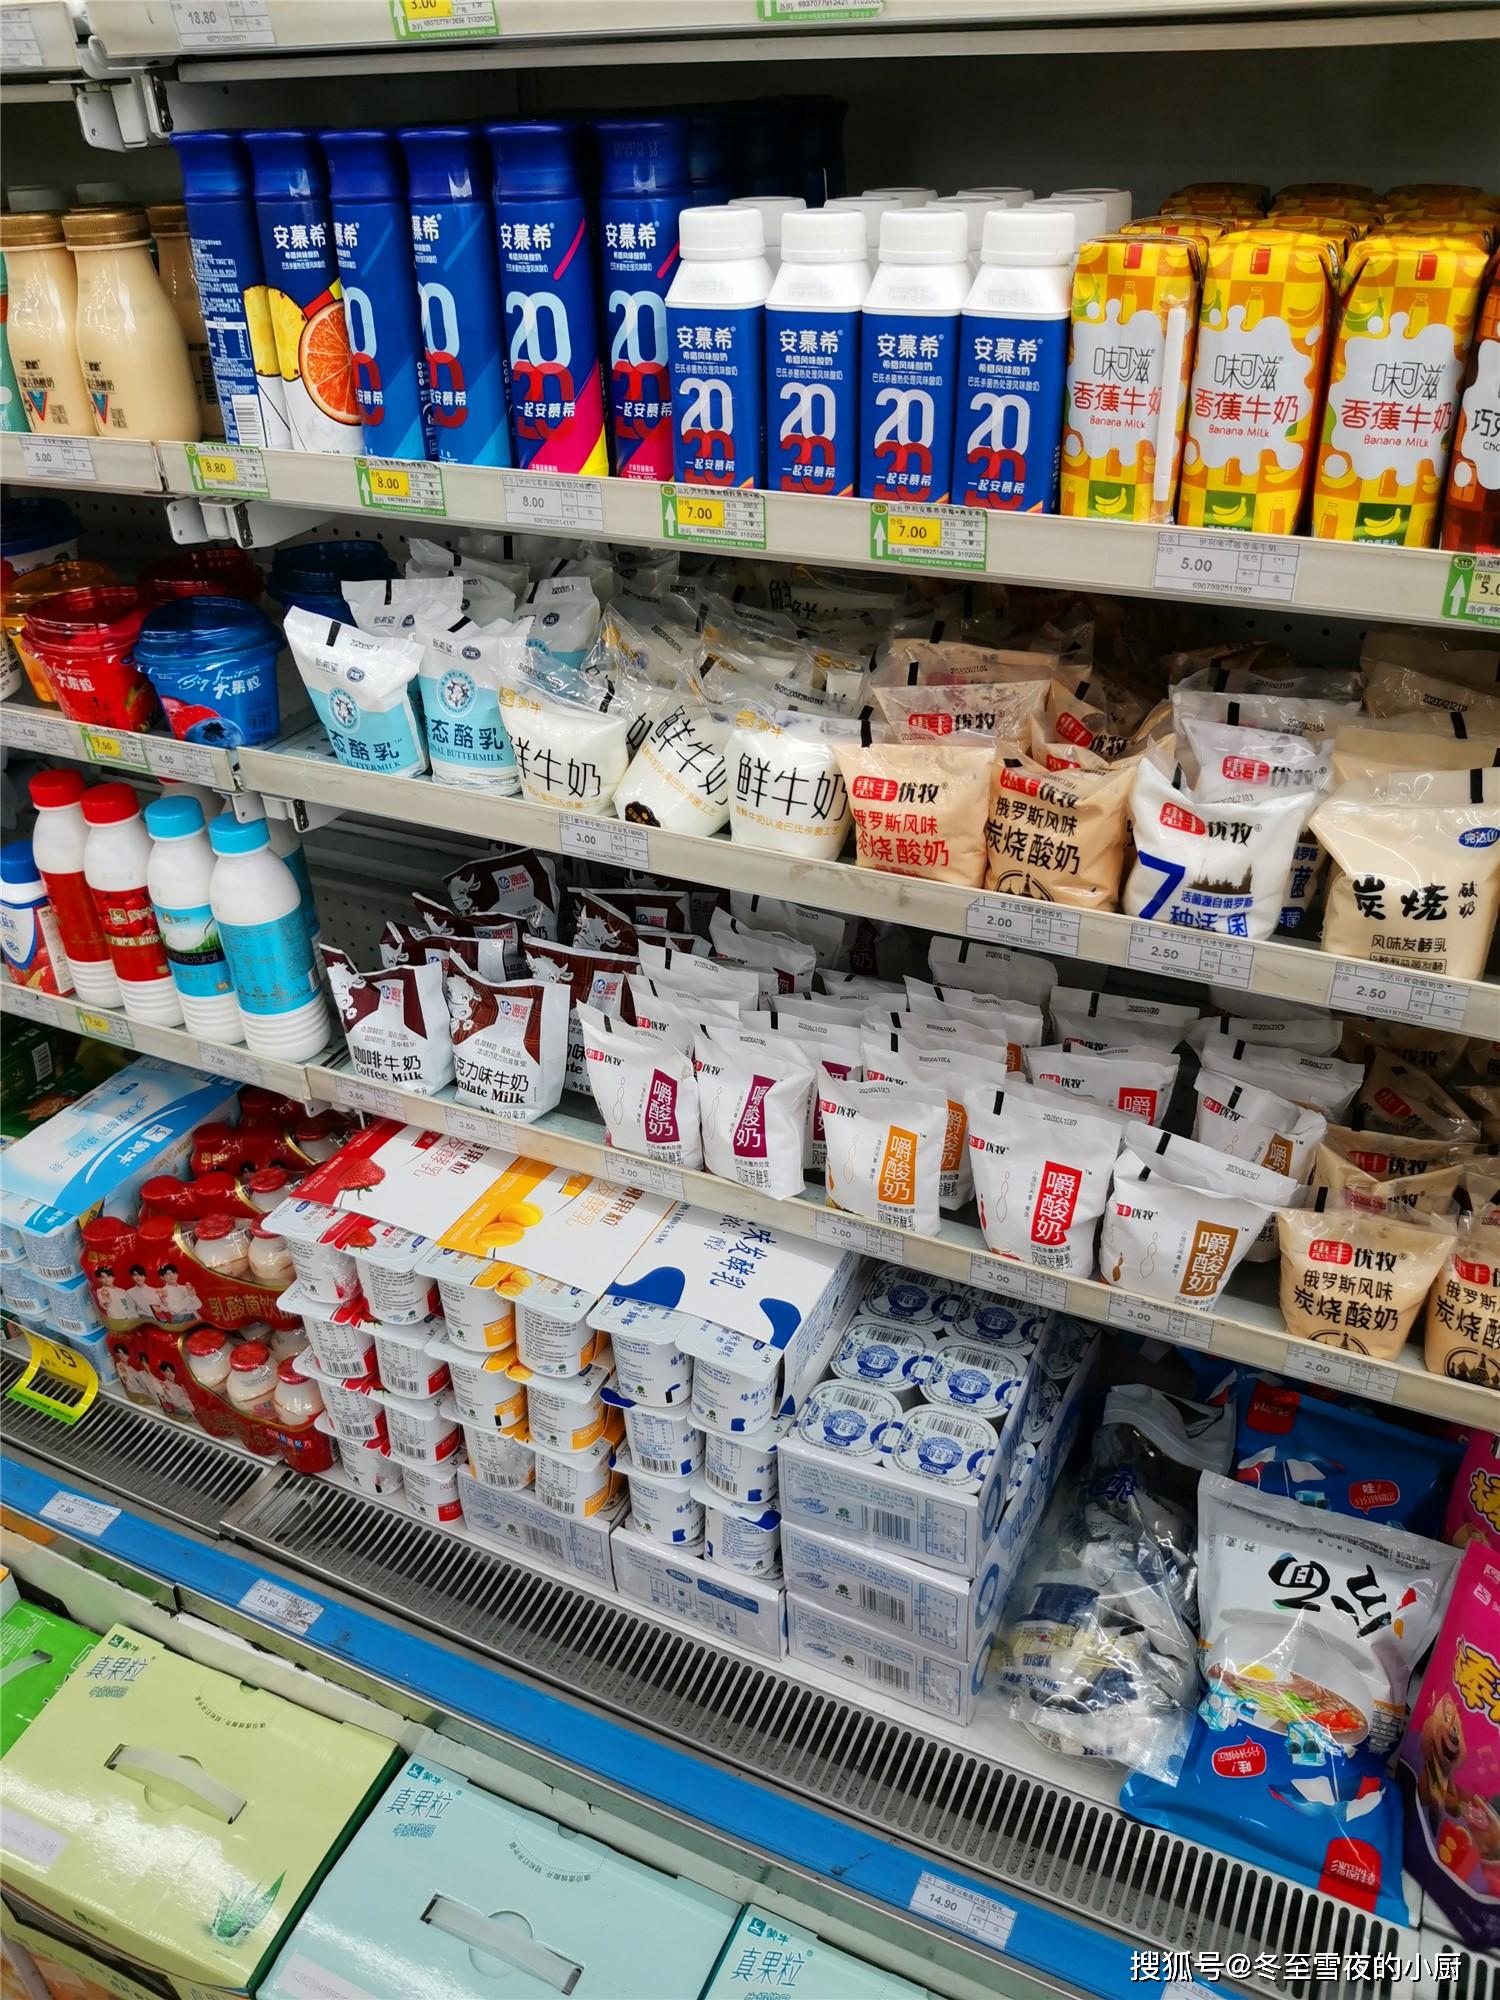 原创去超市买牛奶,要看好背面的这几行字,别再拿饮料给孩子当牛奶喝